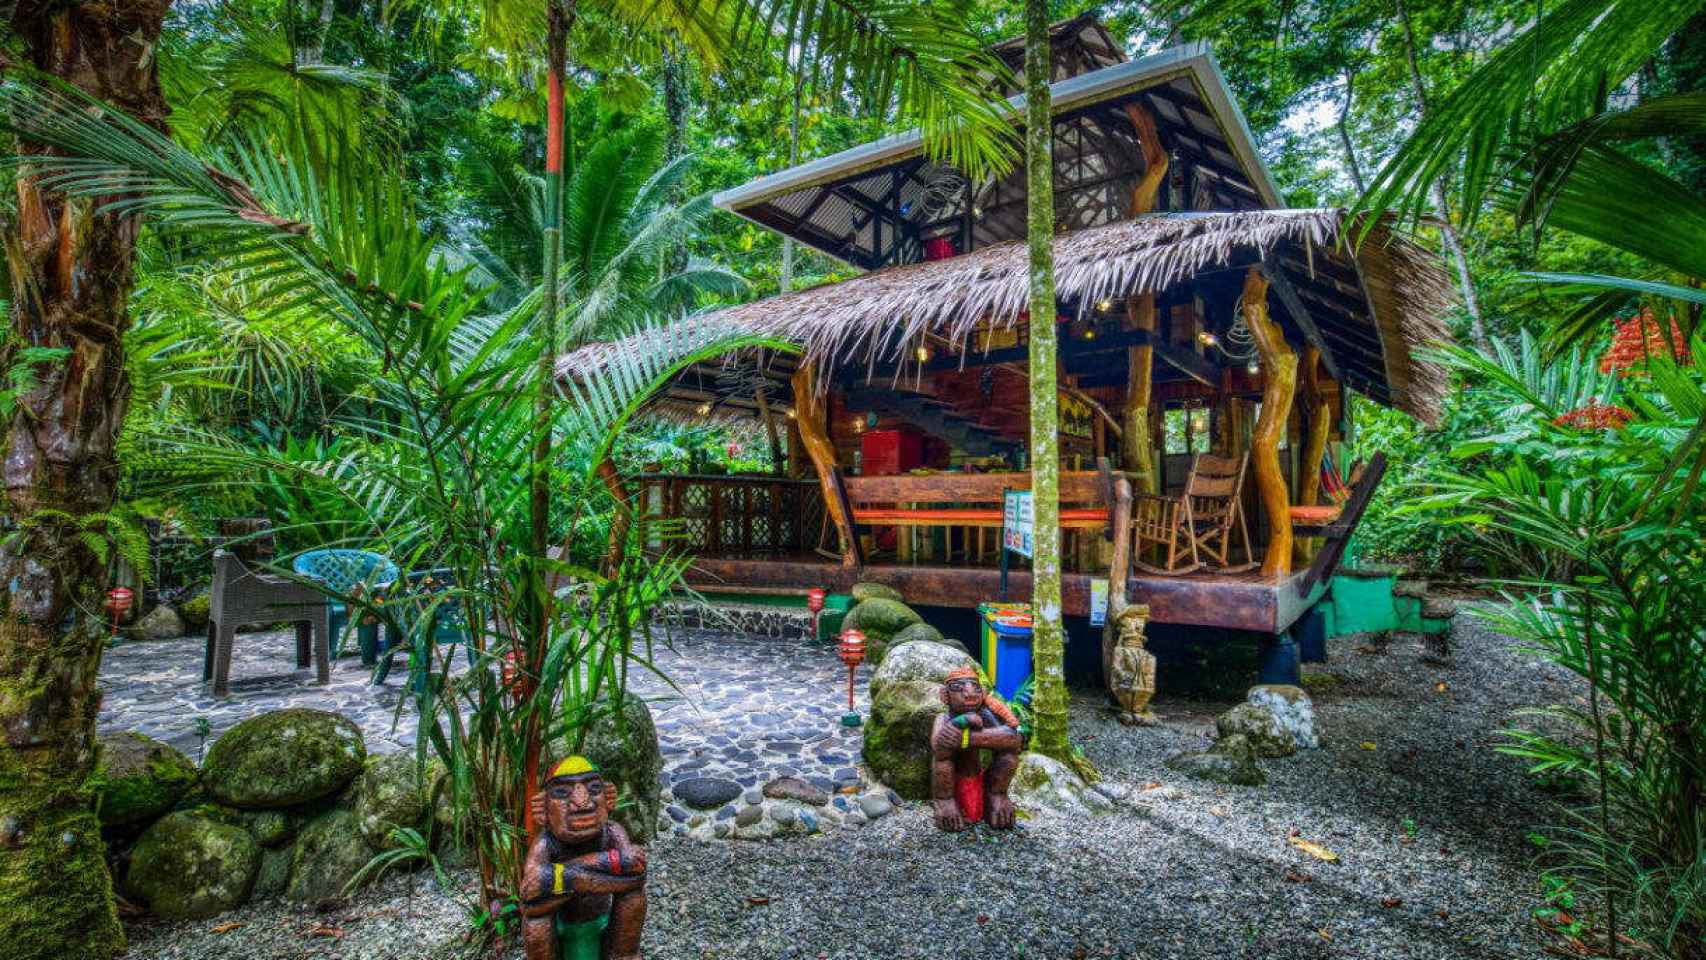 Resort Congo Bongo en el que iba a alojarse Schaller en Costa Rica.